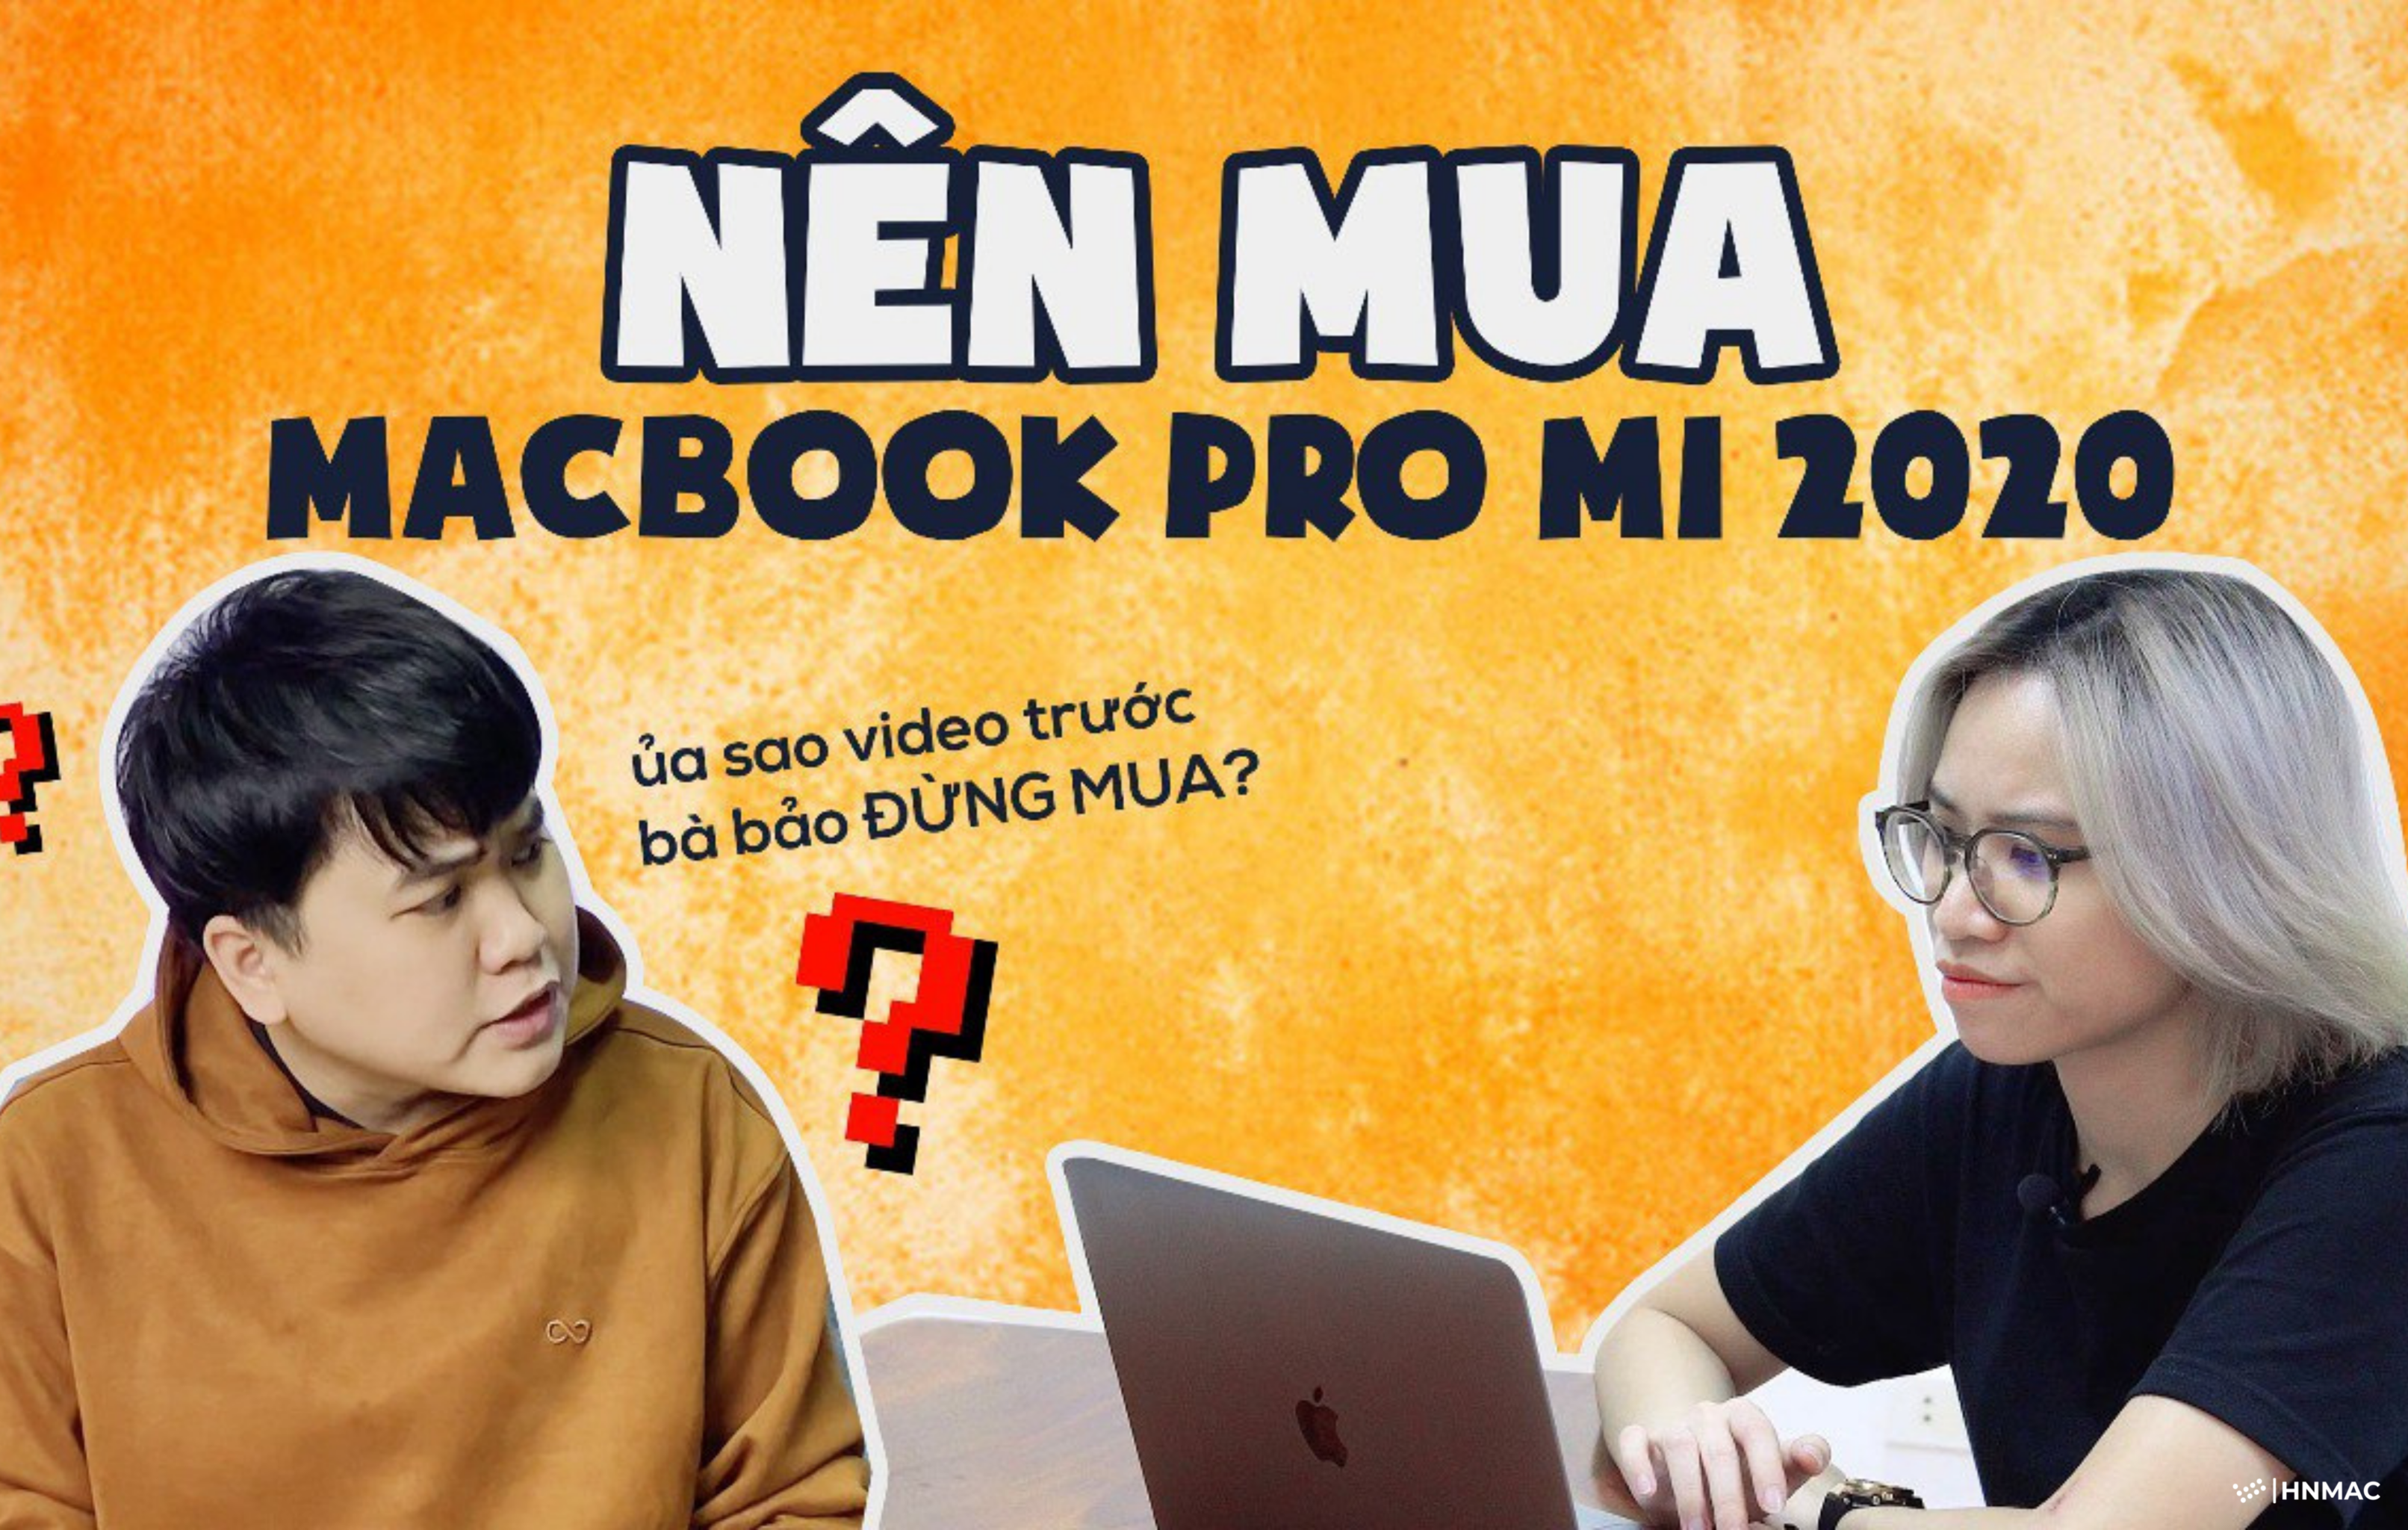 NÊN MUA Macbook Pro M1 2020 NGAY !